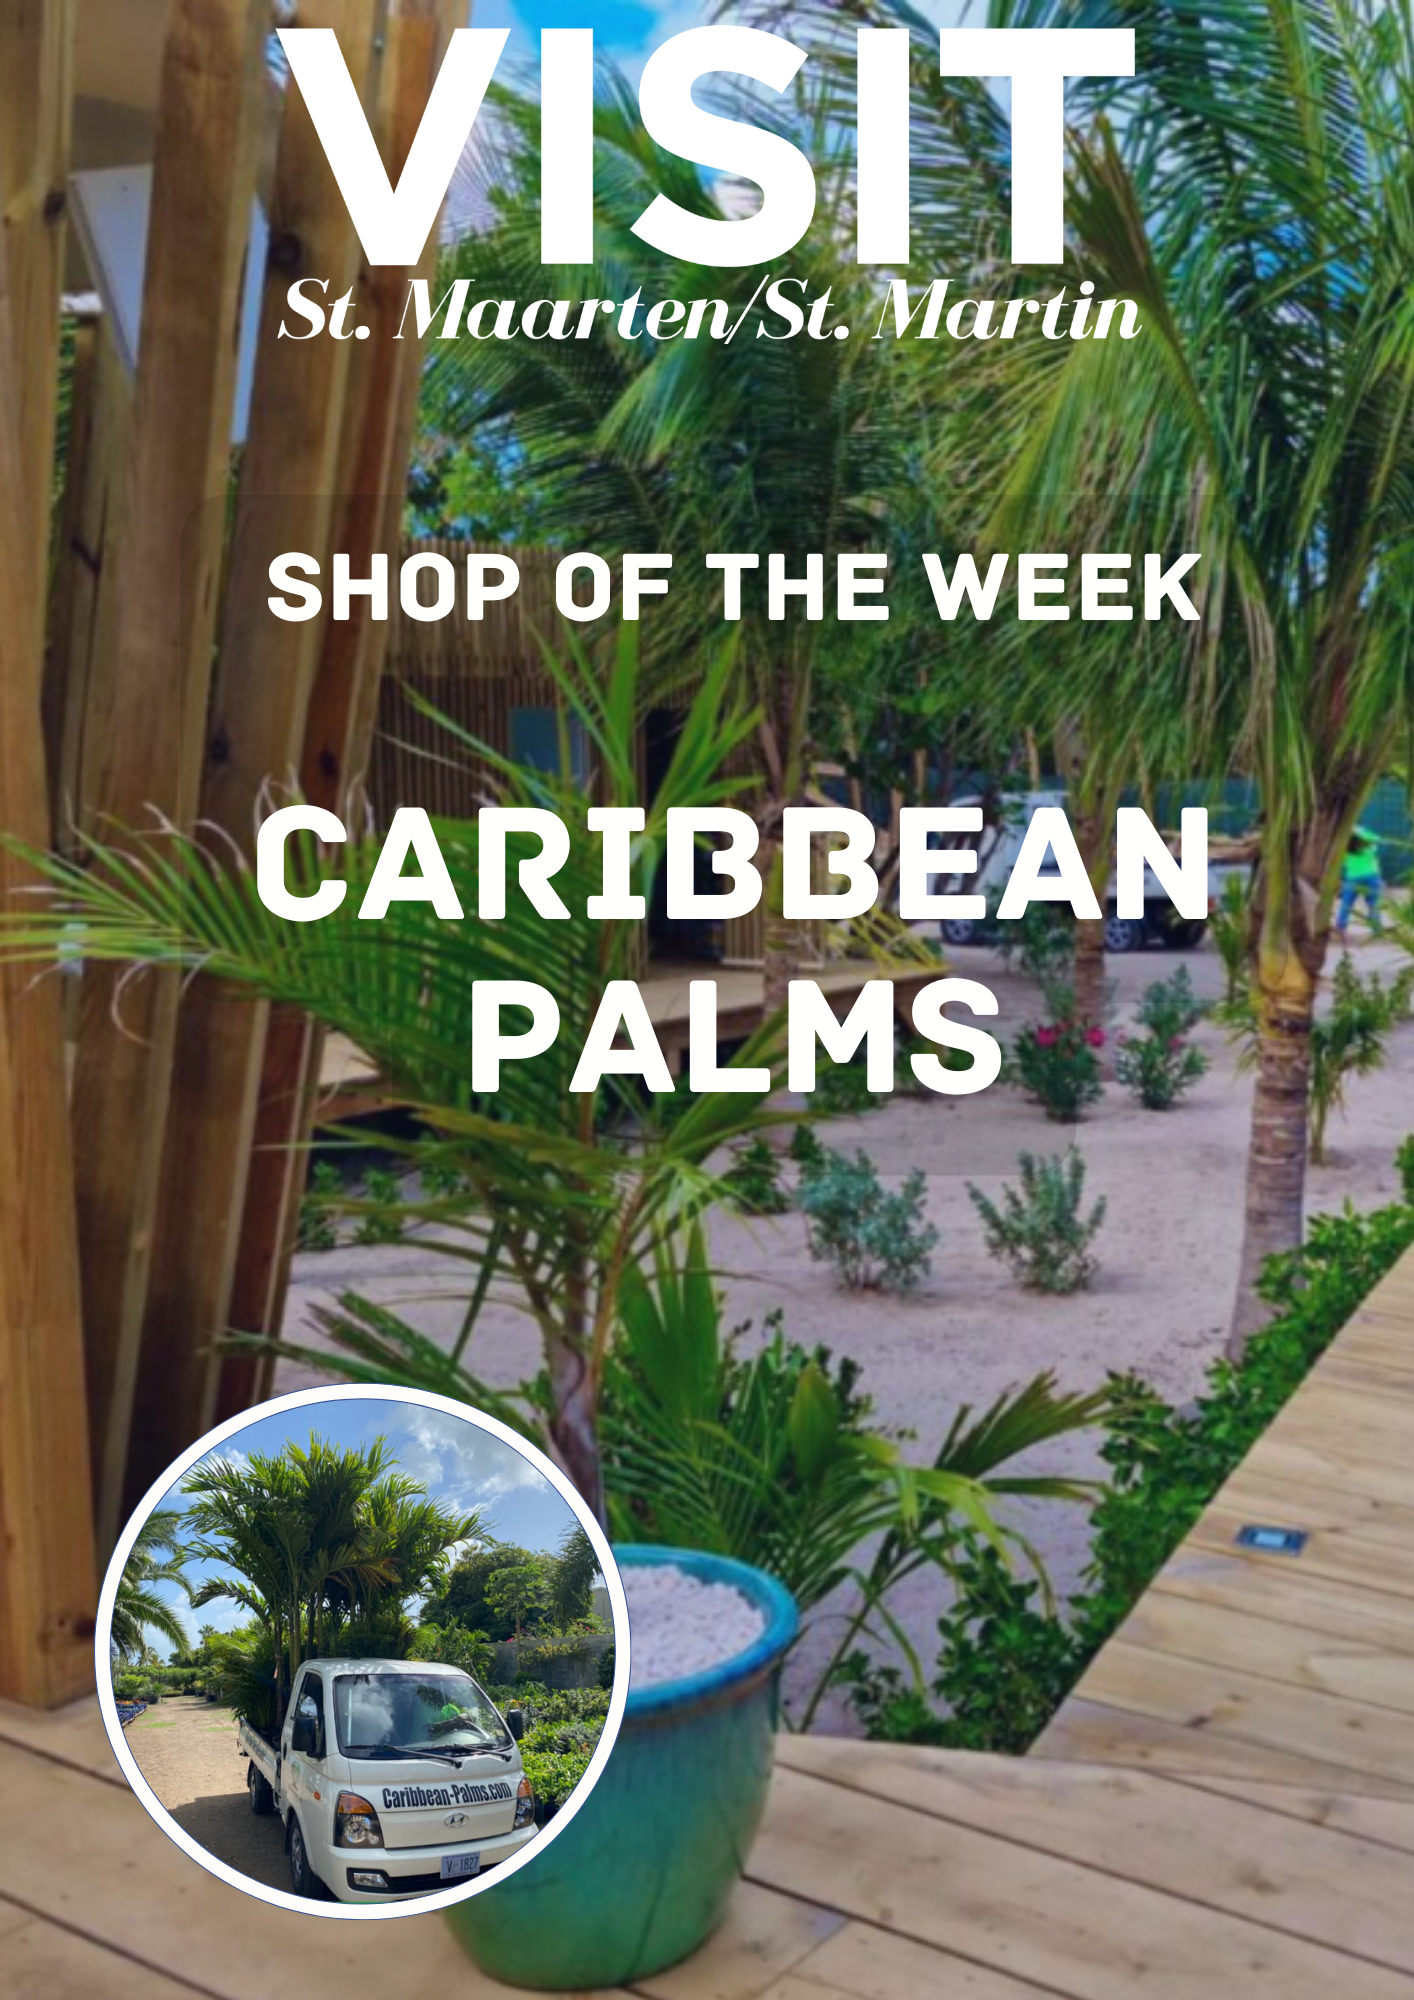 Caribbean Palms, Nature Sint Maarten, Shops of Sint Maarten, Palm trees St Maarten